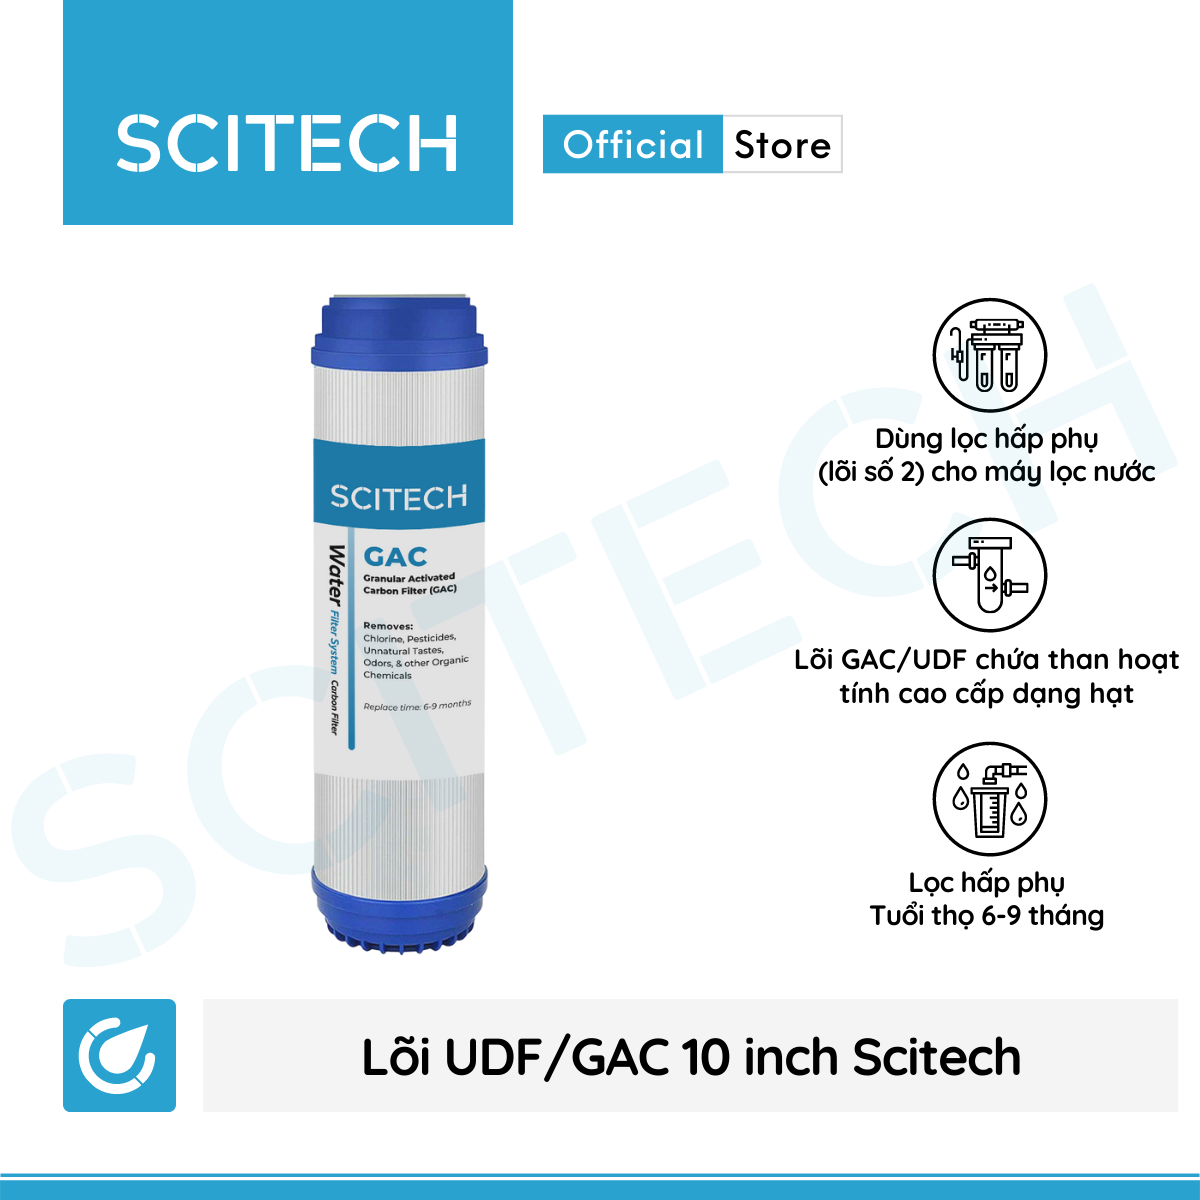 Bộ lọc nước uống công nghệ UF 4 cấp lọc by Scitech (Không dùng điện, không nước thải) - Hàng chính hãng